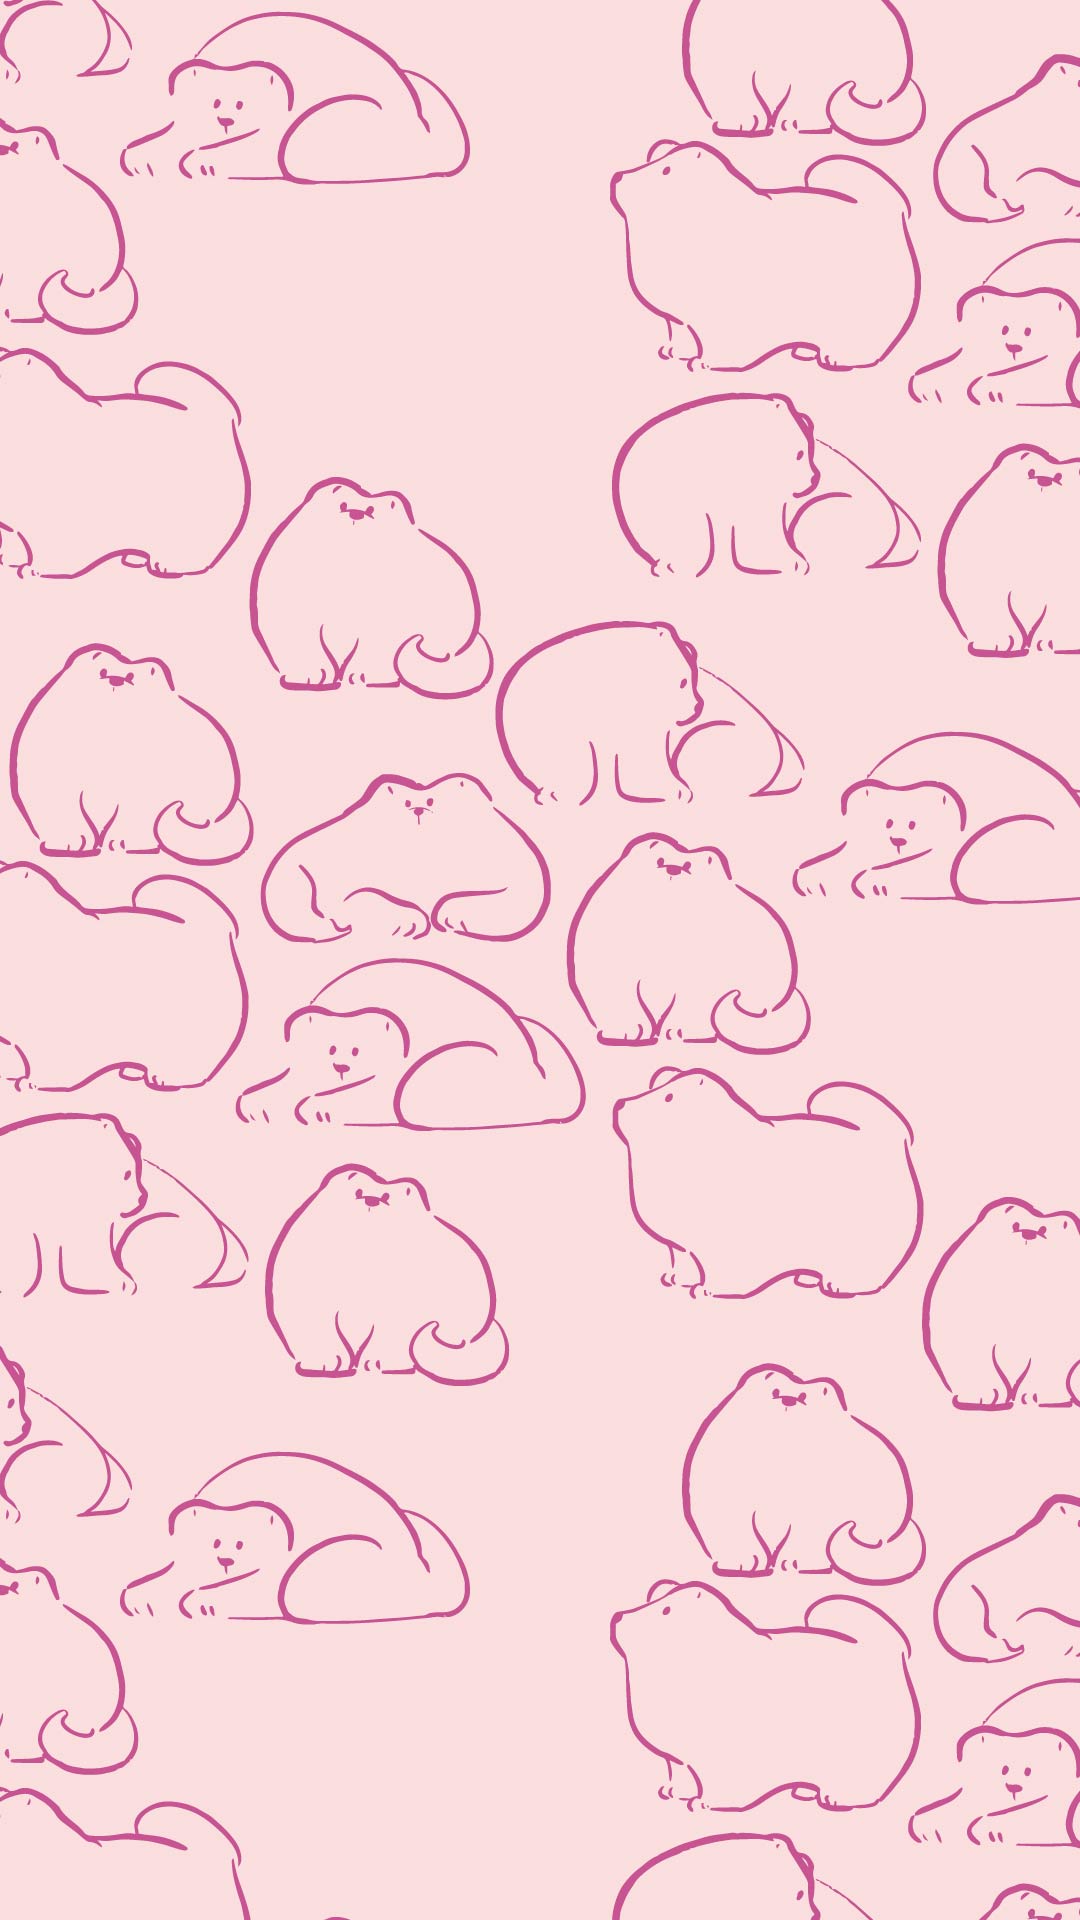 ピンクの背景に凹凸のない犬のパターン